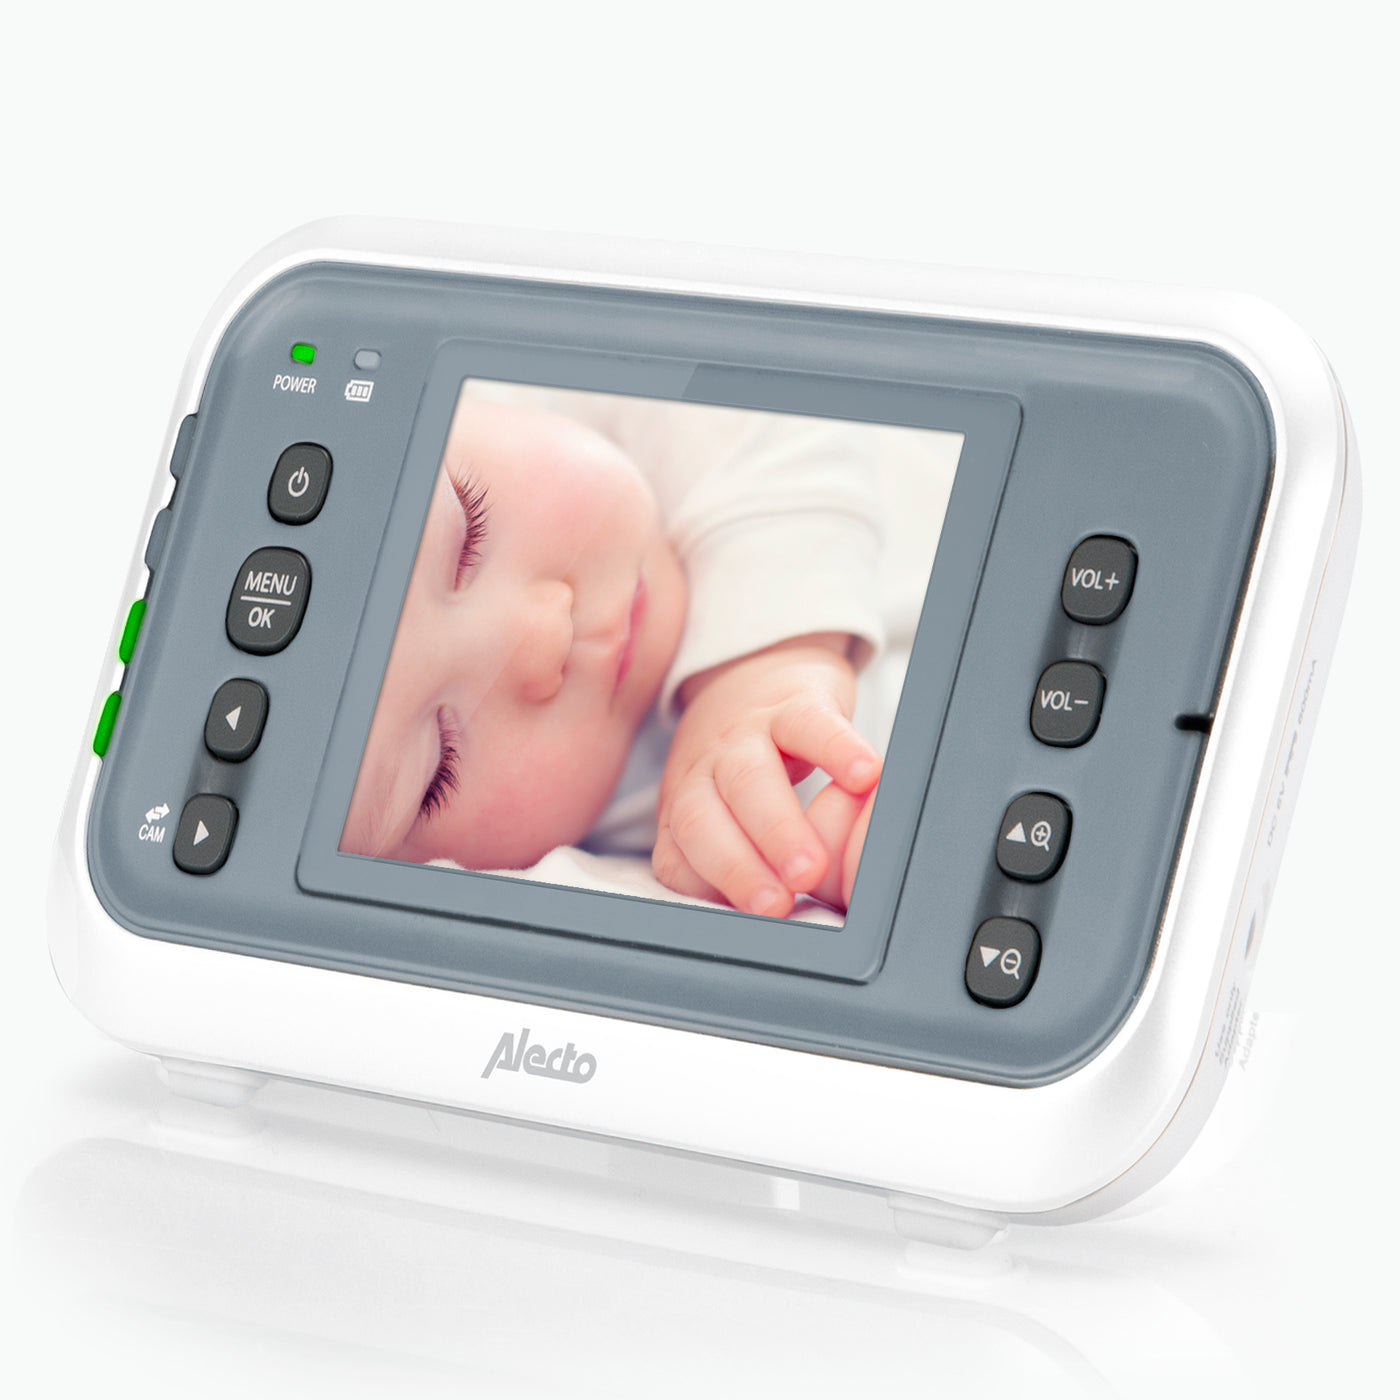 Alecto DVM-76 - Babyphone mit Kamera und 2.8"-Farbdisplay, Weiß/Anthrazit